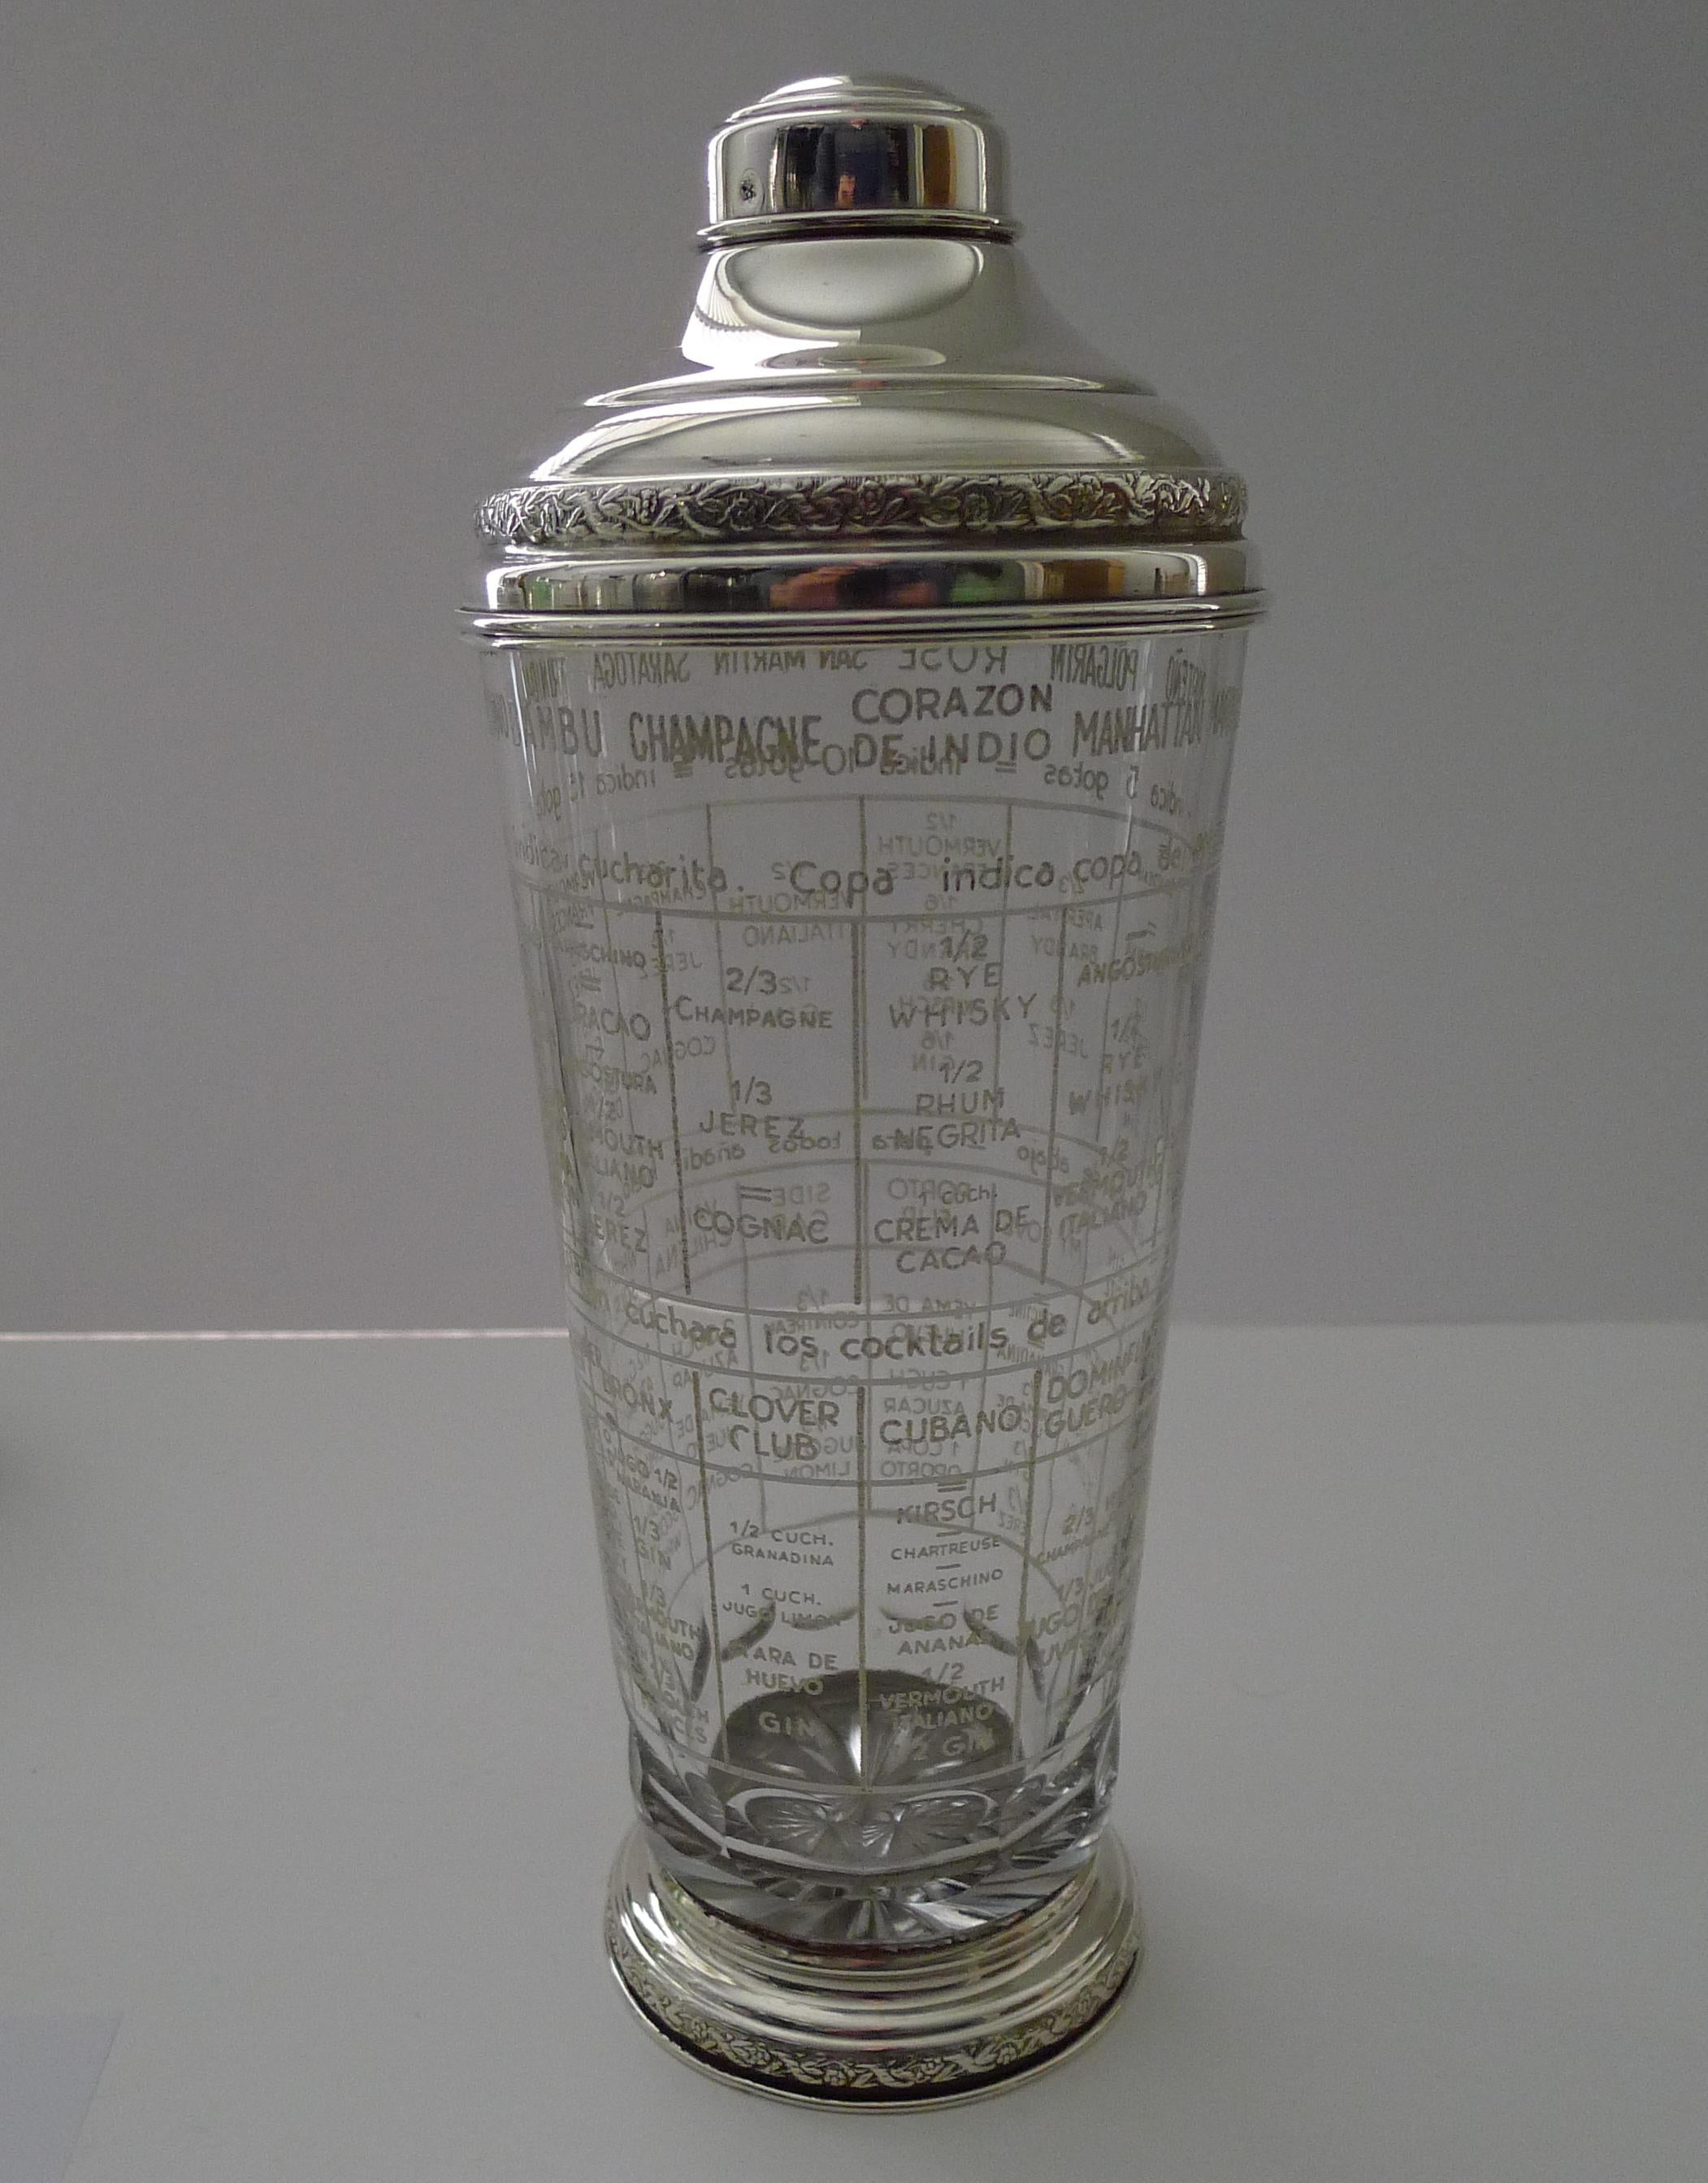 Un magnifique shaker vintage en verre avec des lettres en émail blanc pour créer un shaker de recette / menu intéressant.

Les montures et les accessoires sont fabriqués en argent massif / sterling espagnol ; chaque pièce est marquée du